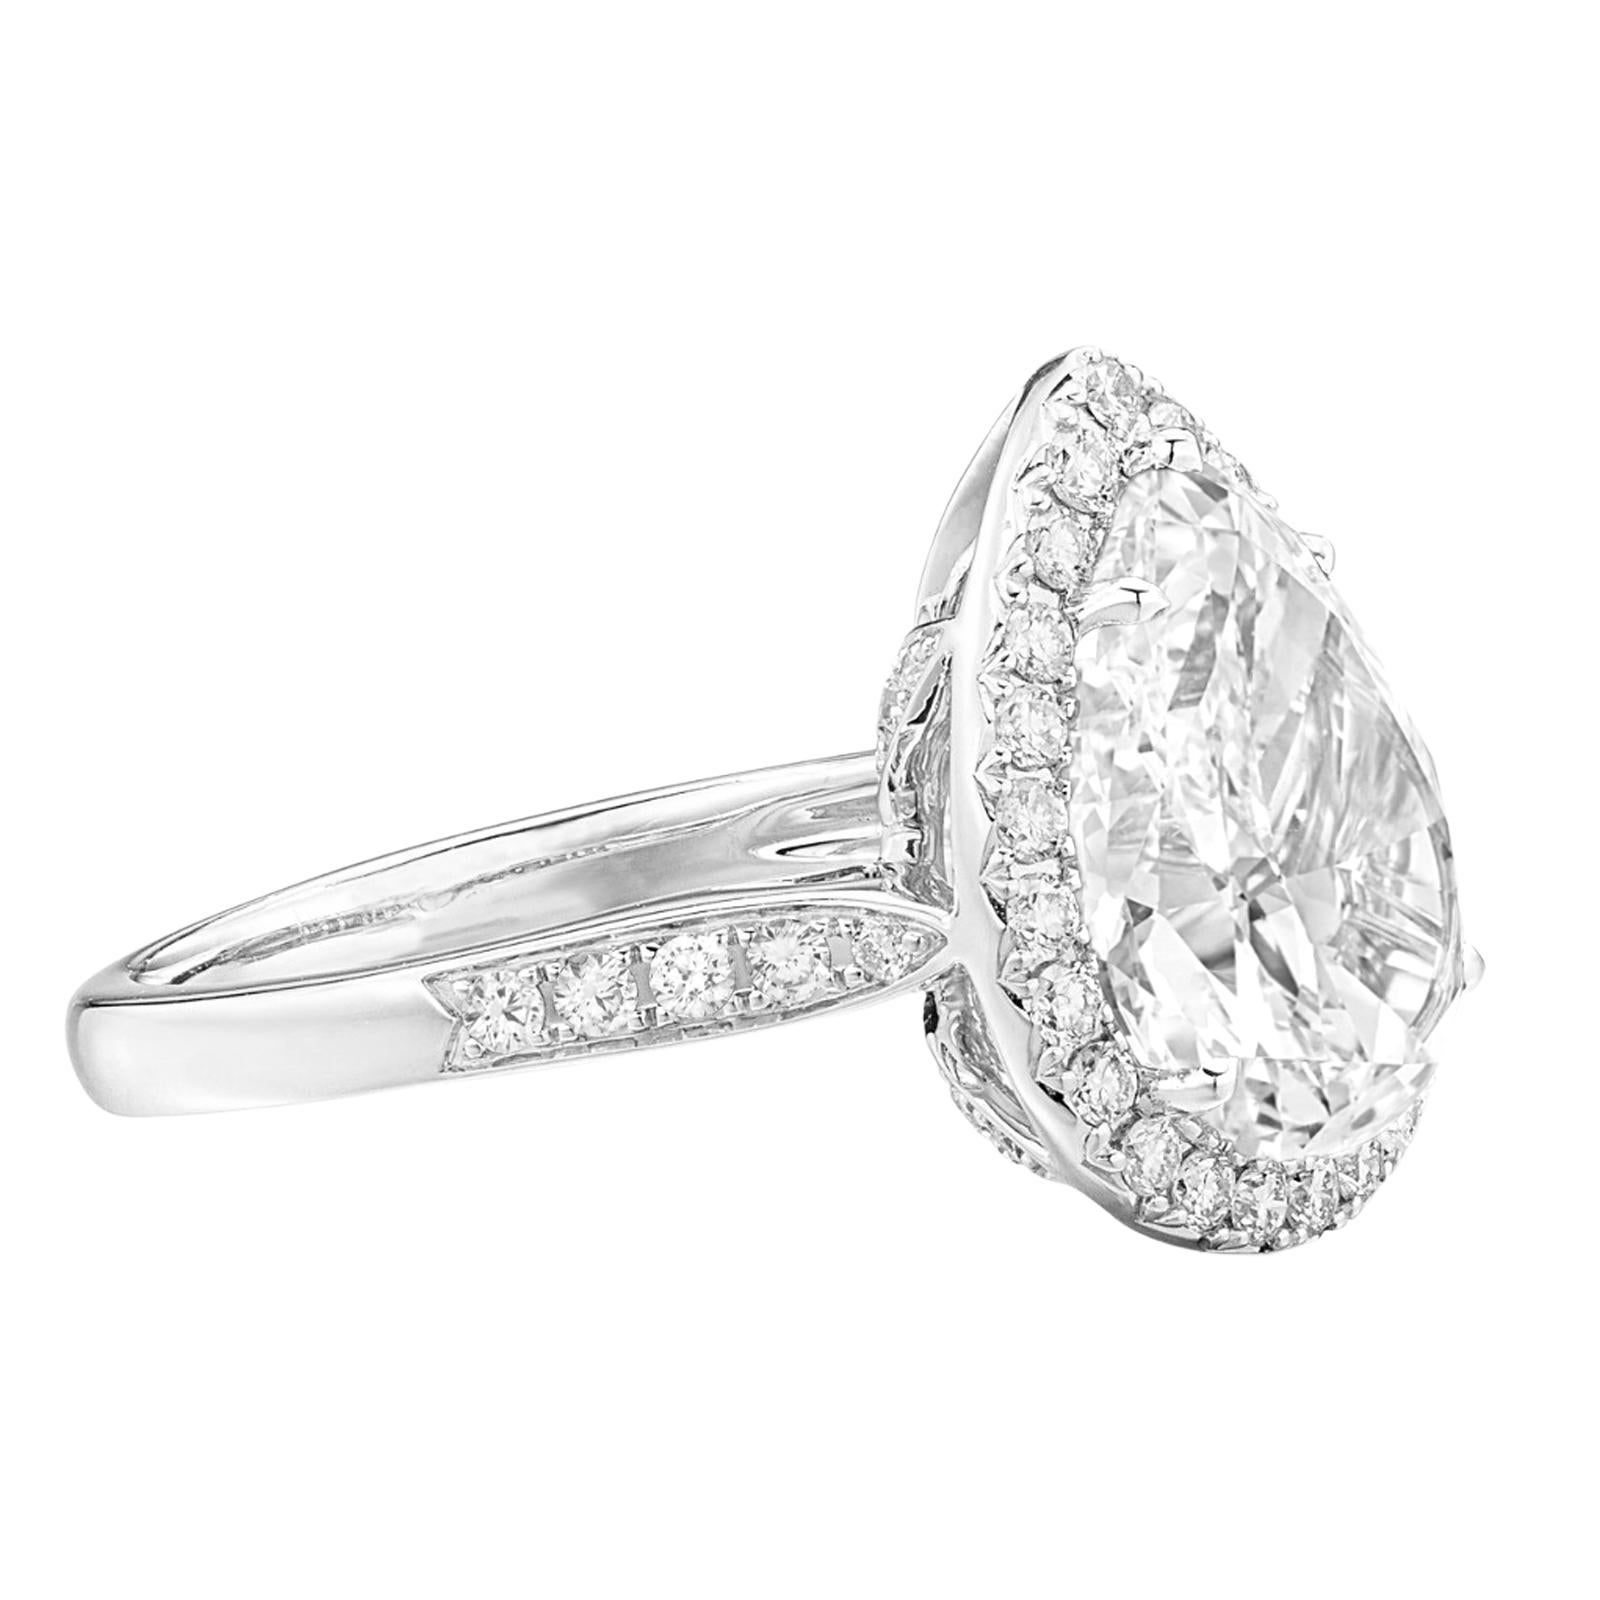 Diamant de 5,36 carats de couleur D et de pureté interne irréprochable, certifié par la GIA, avec un halo et une monture pave, élégamment niché dans de l'or blanc 18k. Ce diamant exquis dépasse le simple luxe ; il représente un choix